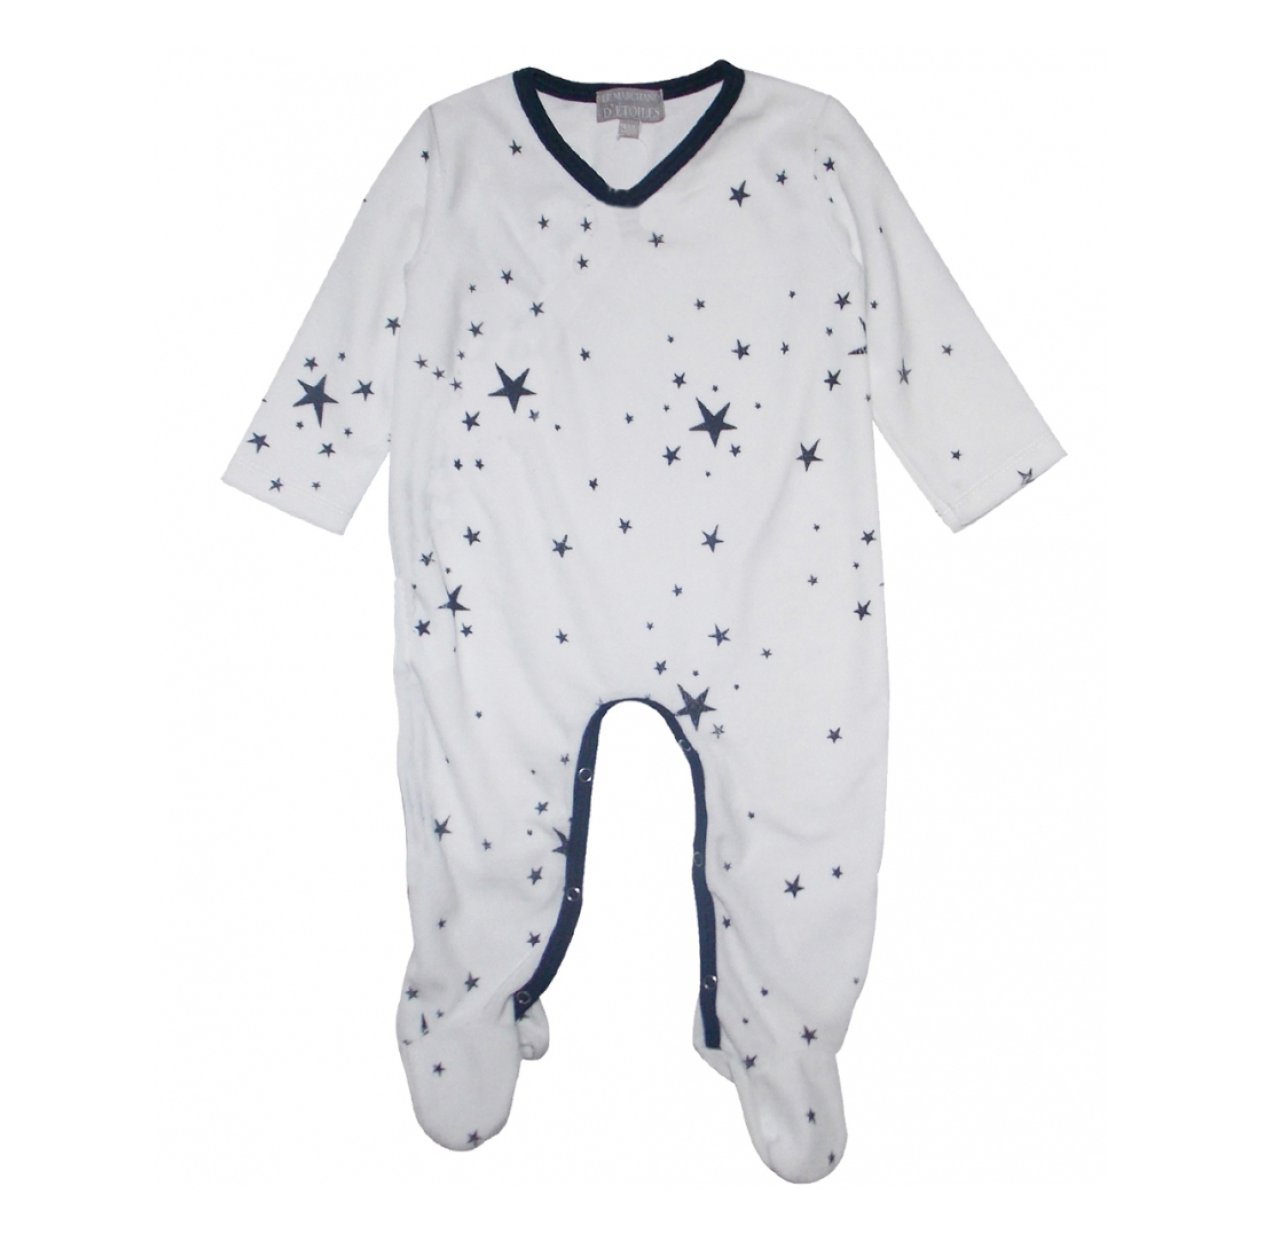 Pyjama Bebe Etoiles Blanc Le Marchand D Etoiles Pour Chambre Enfant Les Enfants Du Design